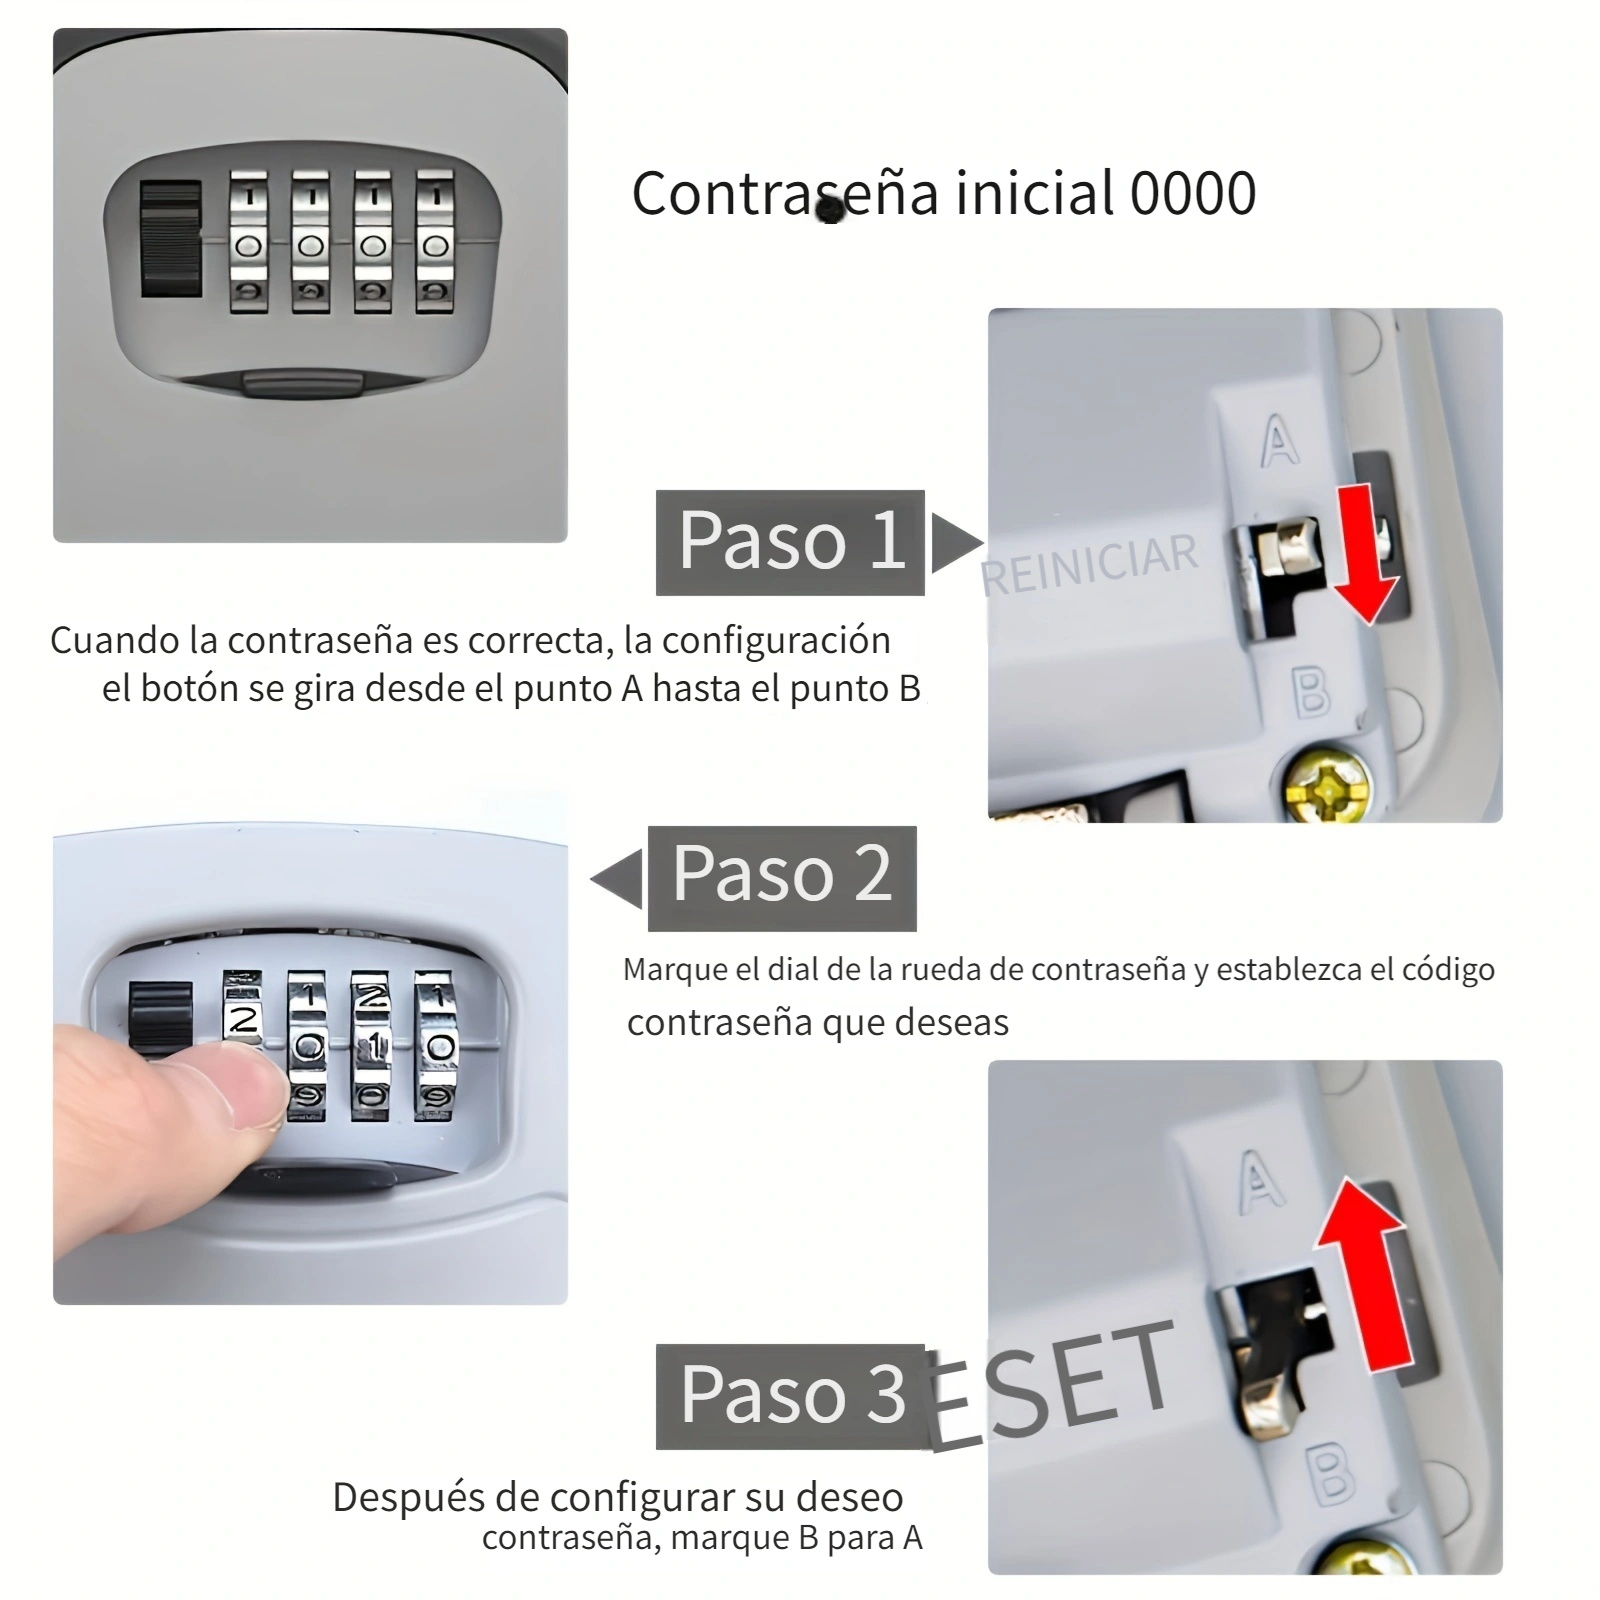  TTRWIN Caja de seguridad para llaves de seguridad, aleación de  zinc de 4 dígitos montada en la pared para llaves de repuesto exteriores,  caja de almacenamiento portátil resistente a la intemperie